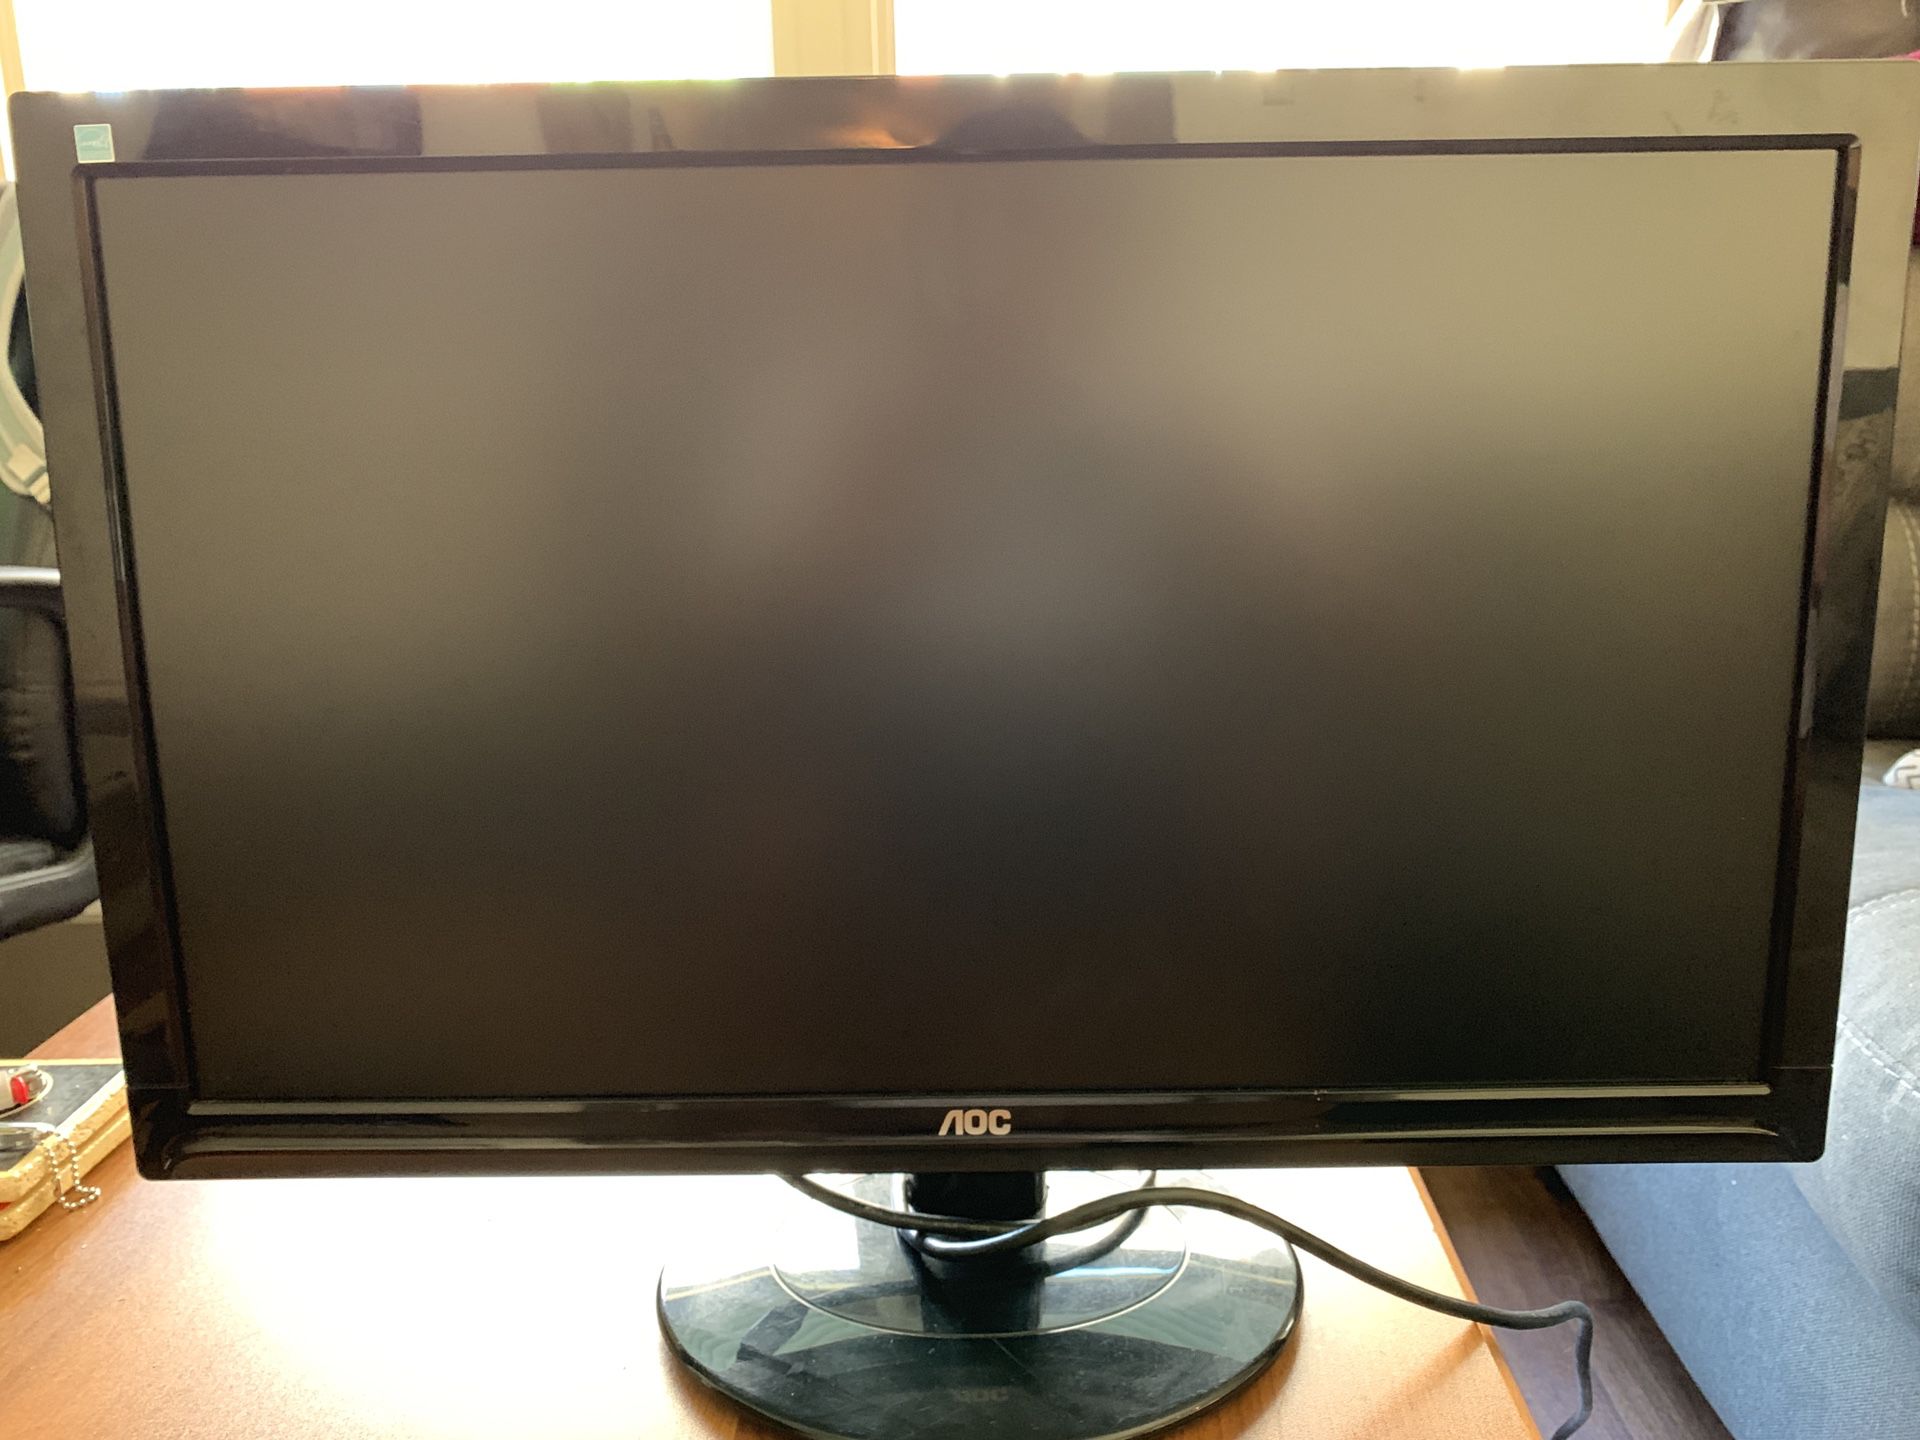 (2) 24 inch AOC computer/gaming monitors